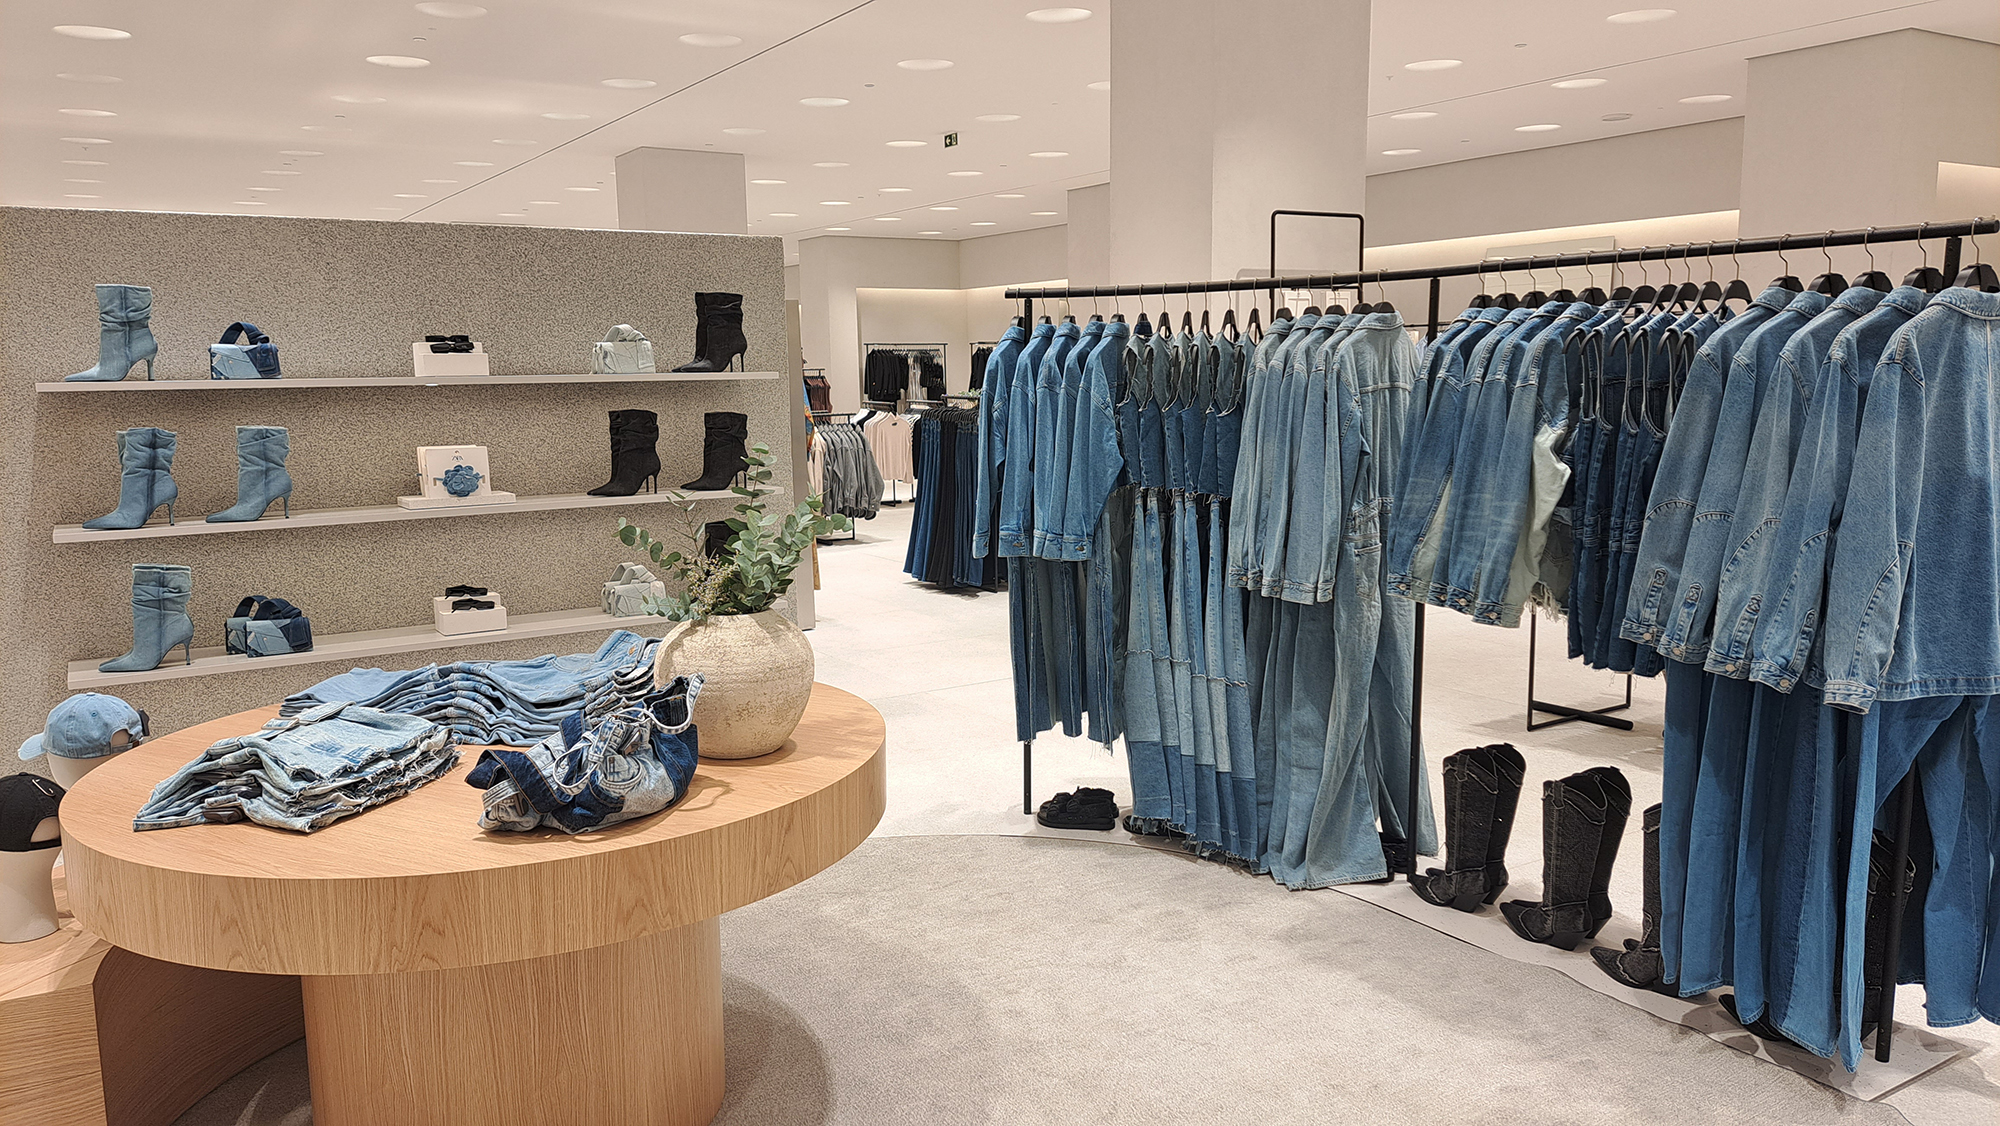 CONSUMO: Zara inaugura loja de 2 mil metros com novo conceito em